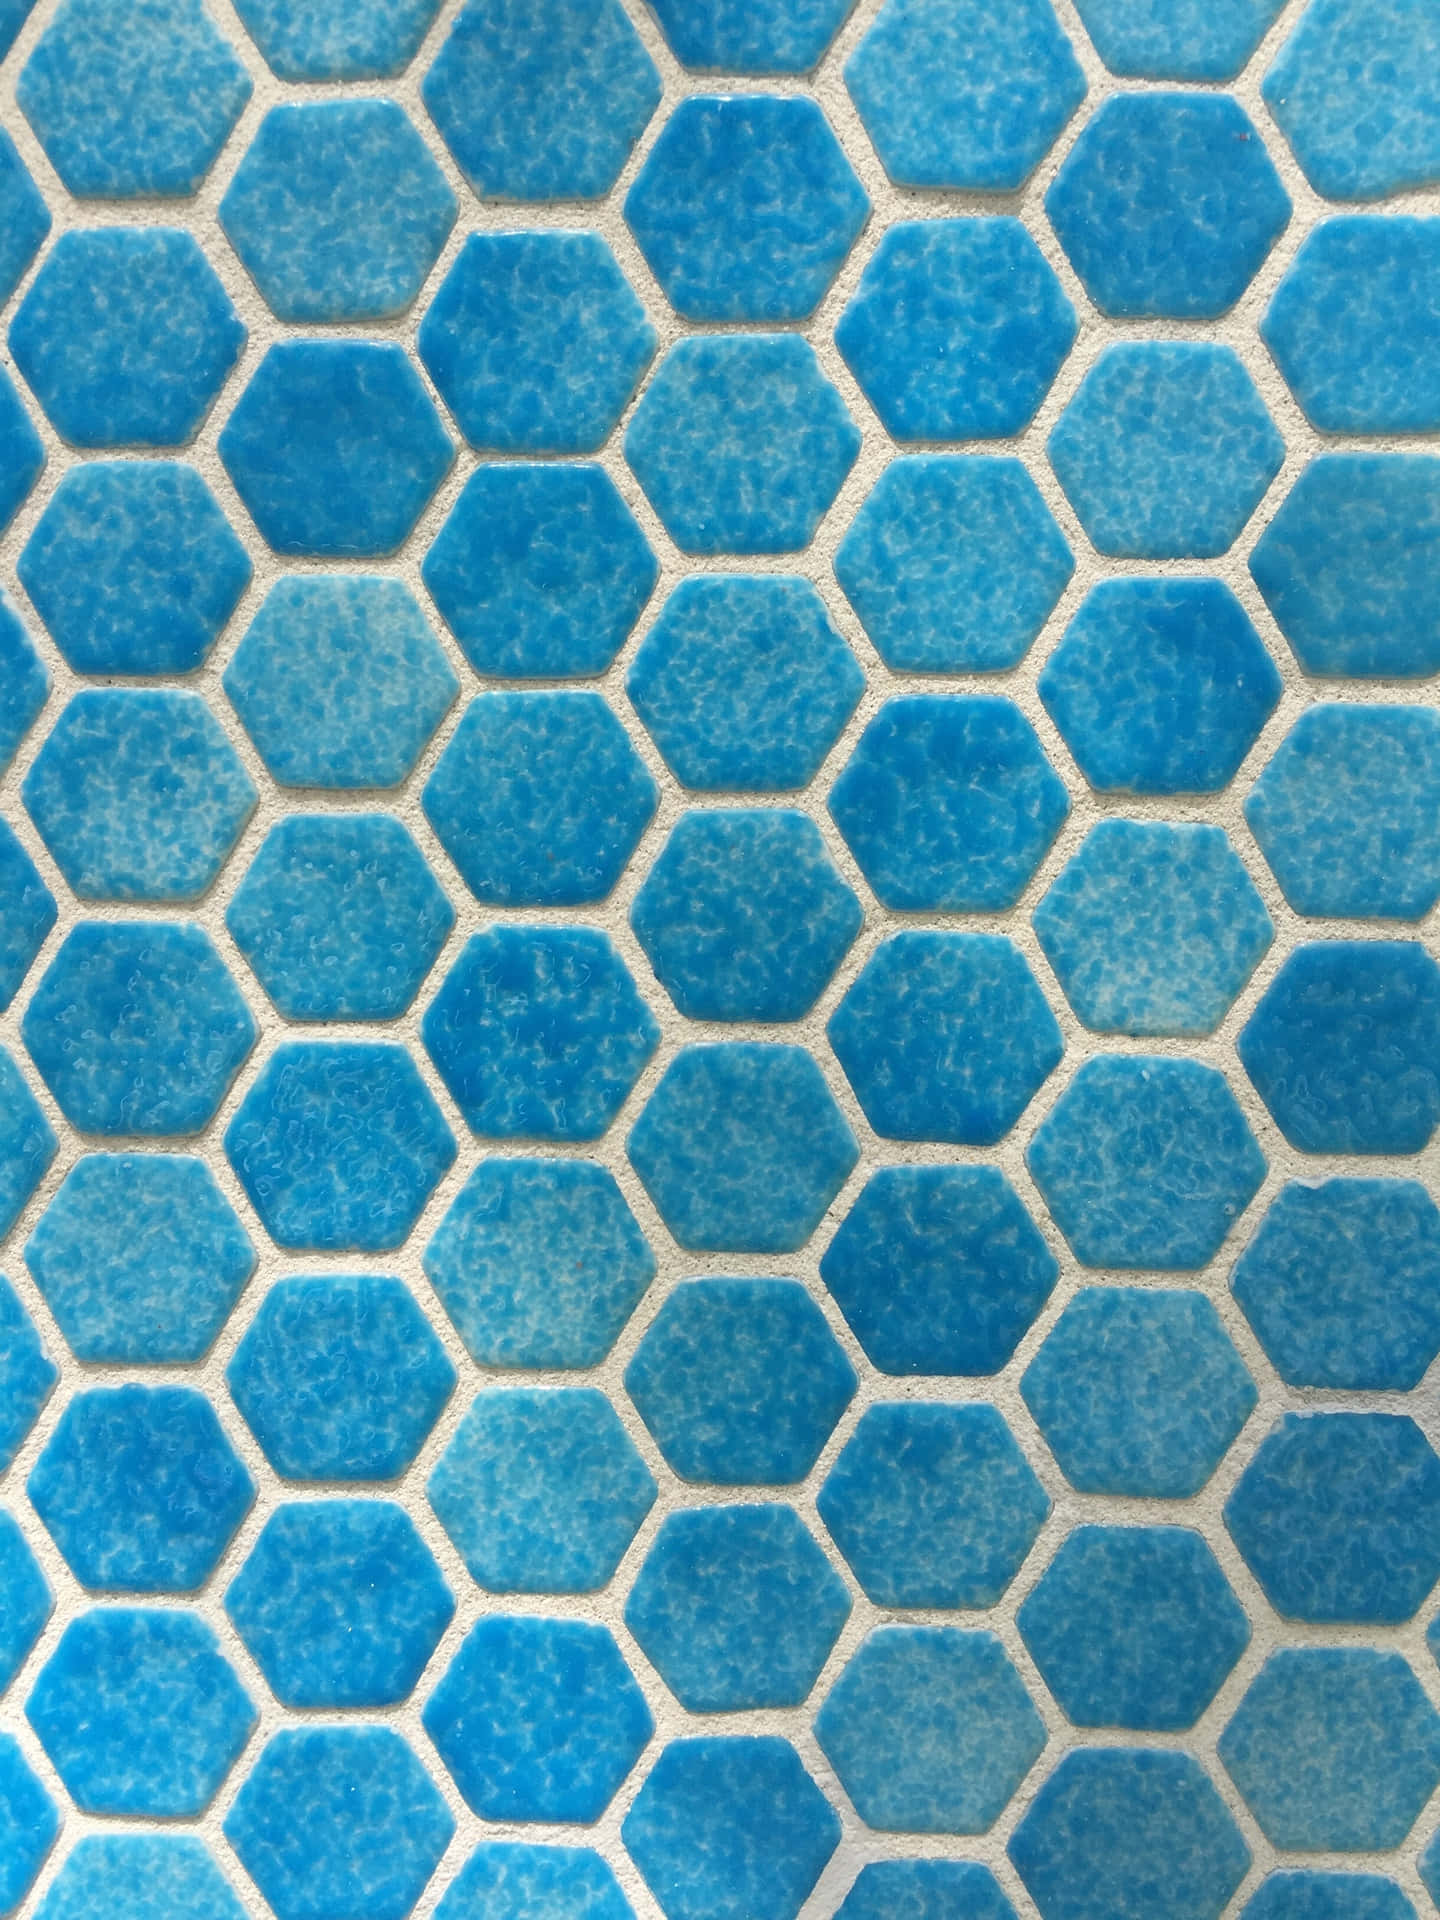 Blue_ Hexagonal_ Tile_ Texture Wallpaper